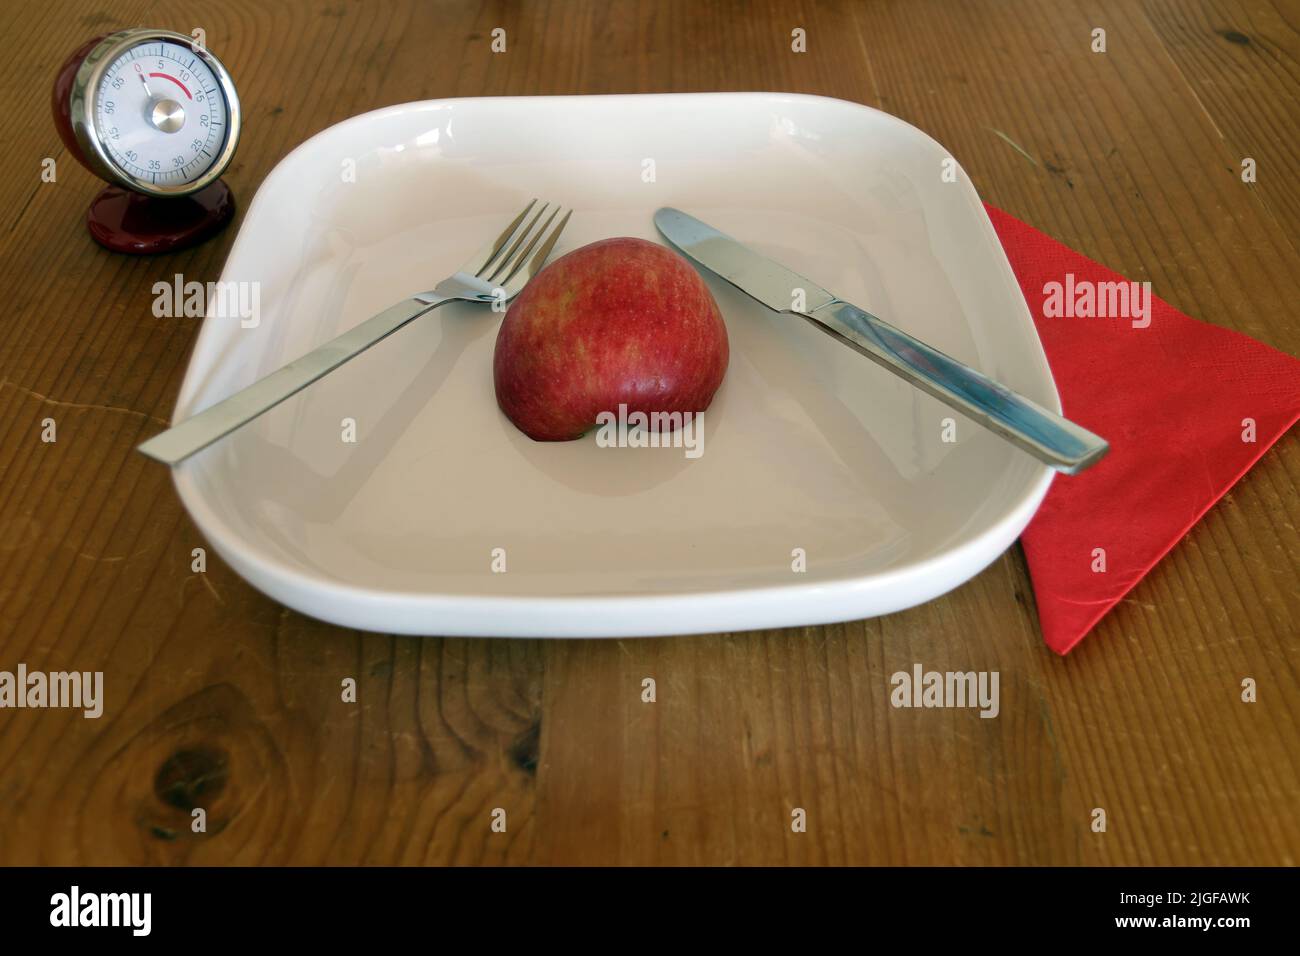 Image symbolique pour le contrôle du régime et du poids, jeûne intermittent : assiette avec demi-pomme, chronomètre, horloge, couteau et fourchette Banque D'Images